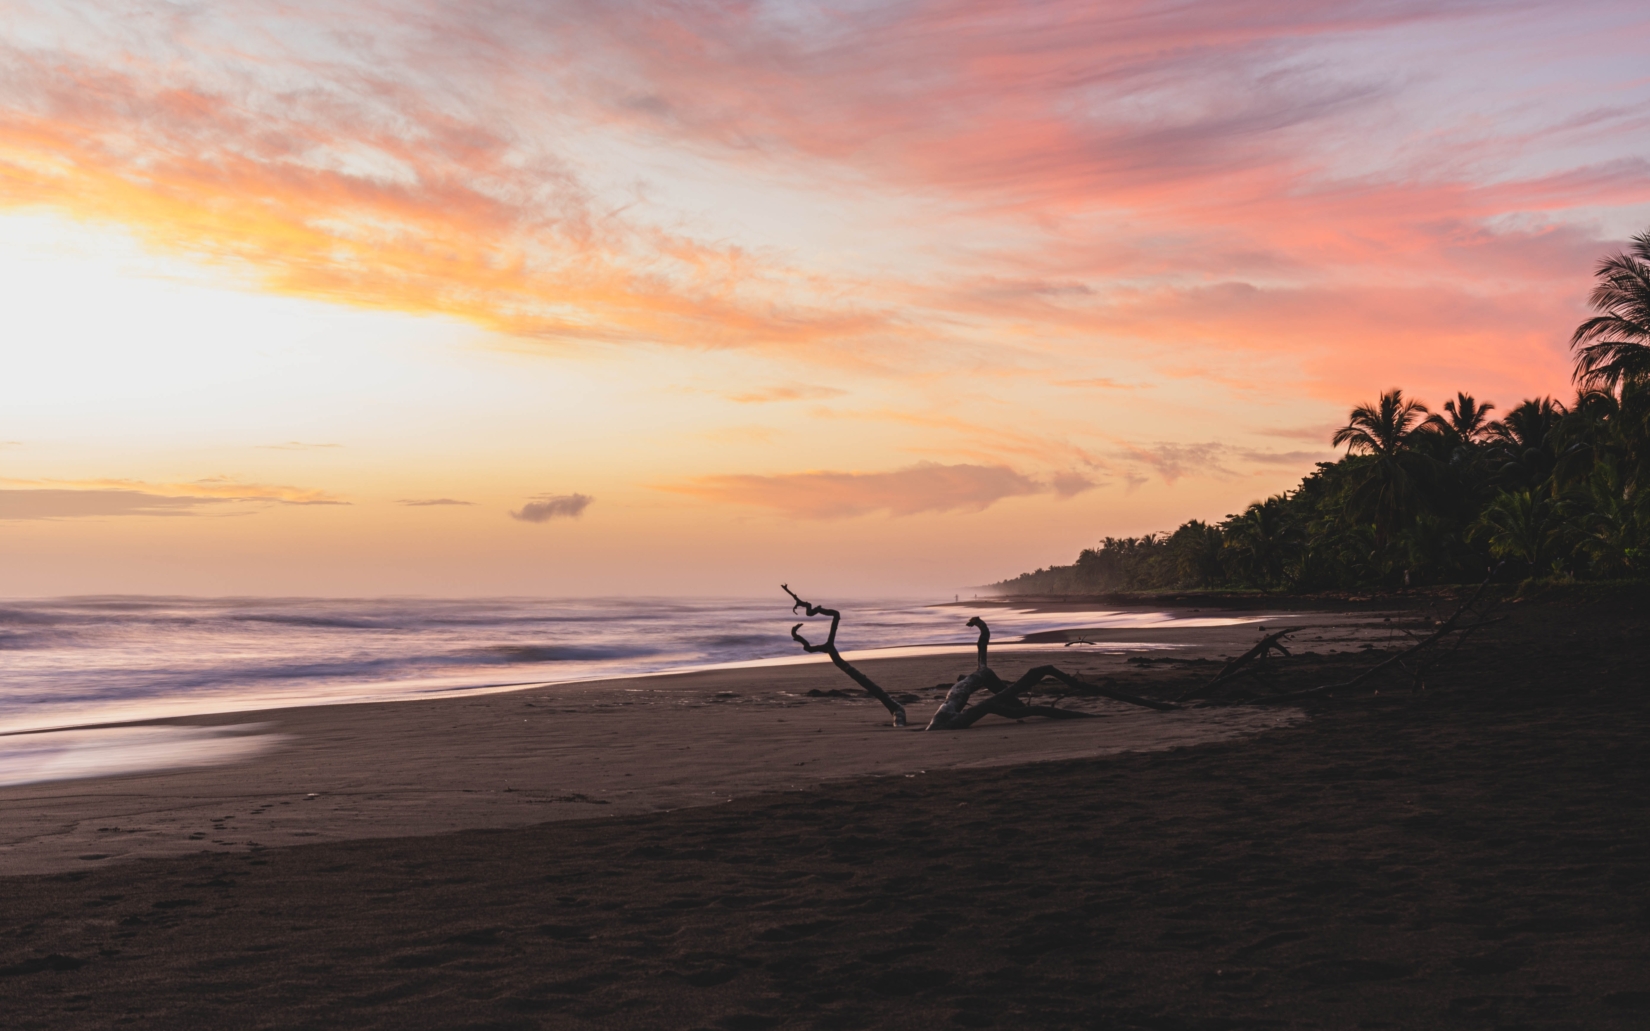 Colorful sunrise on Tortuguero beach in Costa Rica